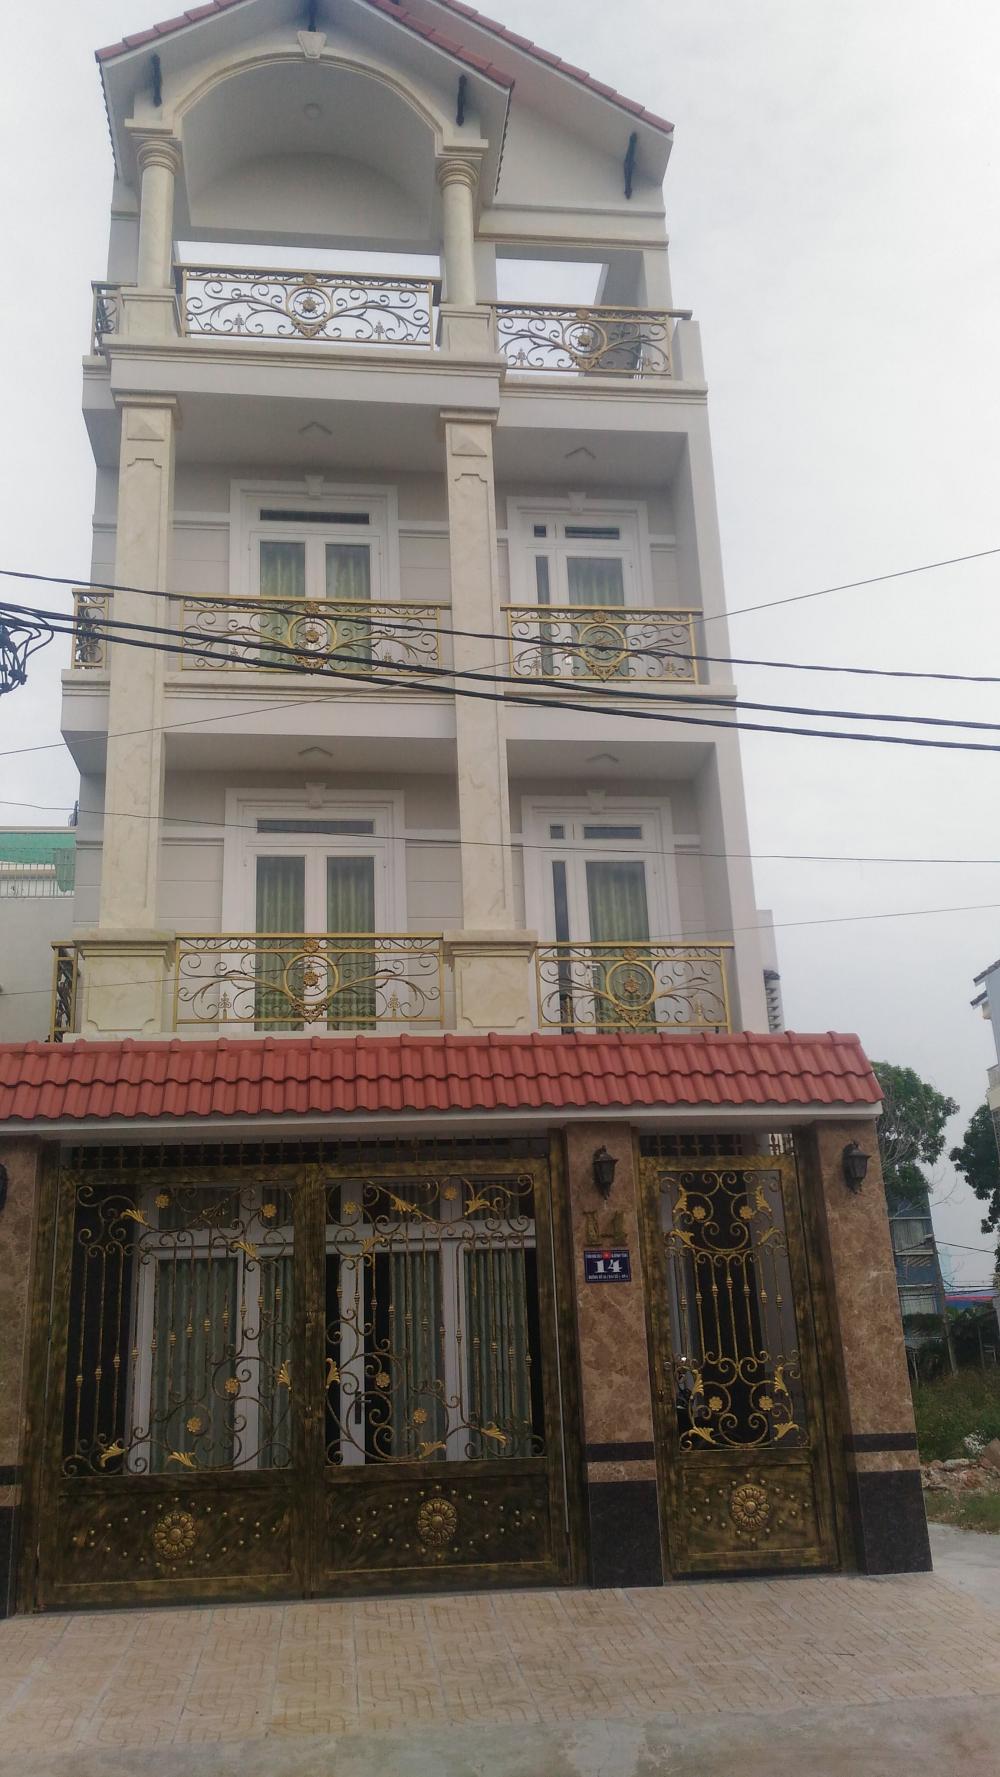 Bán nhà Bình Thành giao Nguyễn Thị Tú, 4x14m, 2 lầu+sân thượng mới đẹp, 2,4 tỷ